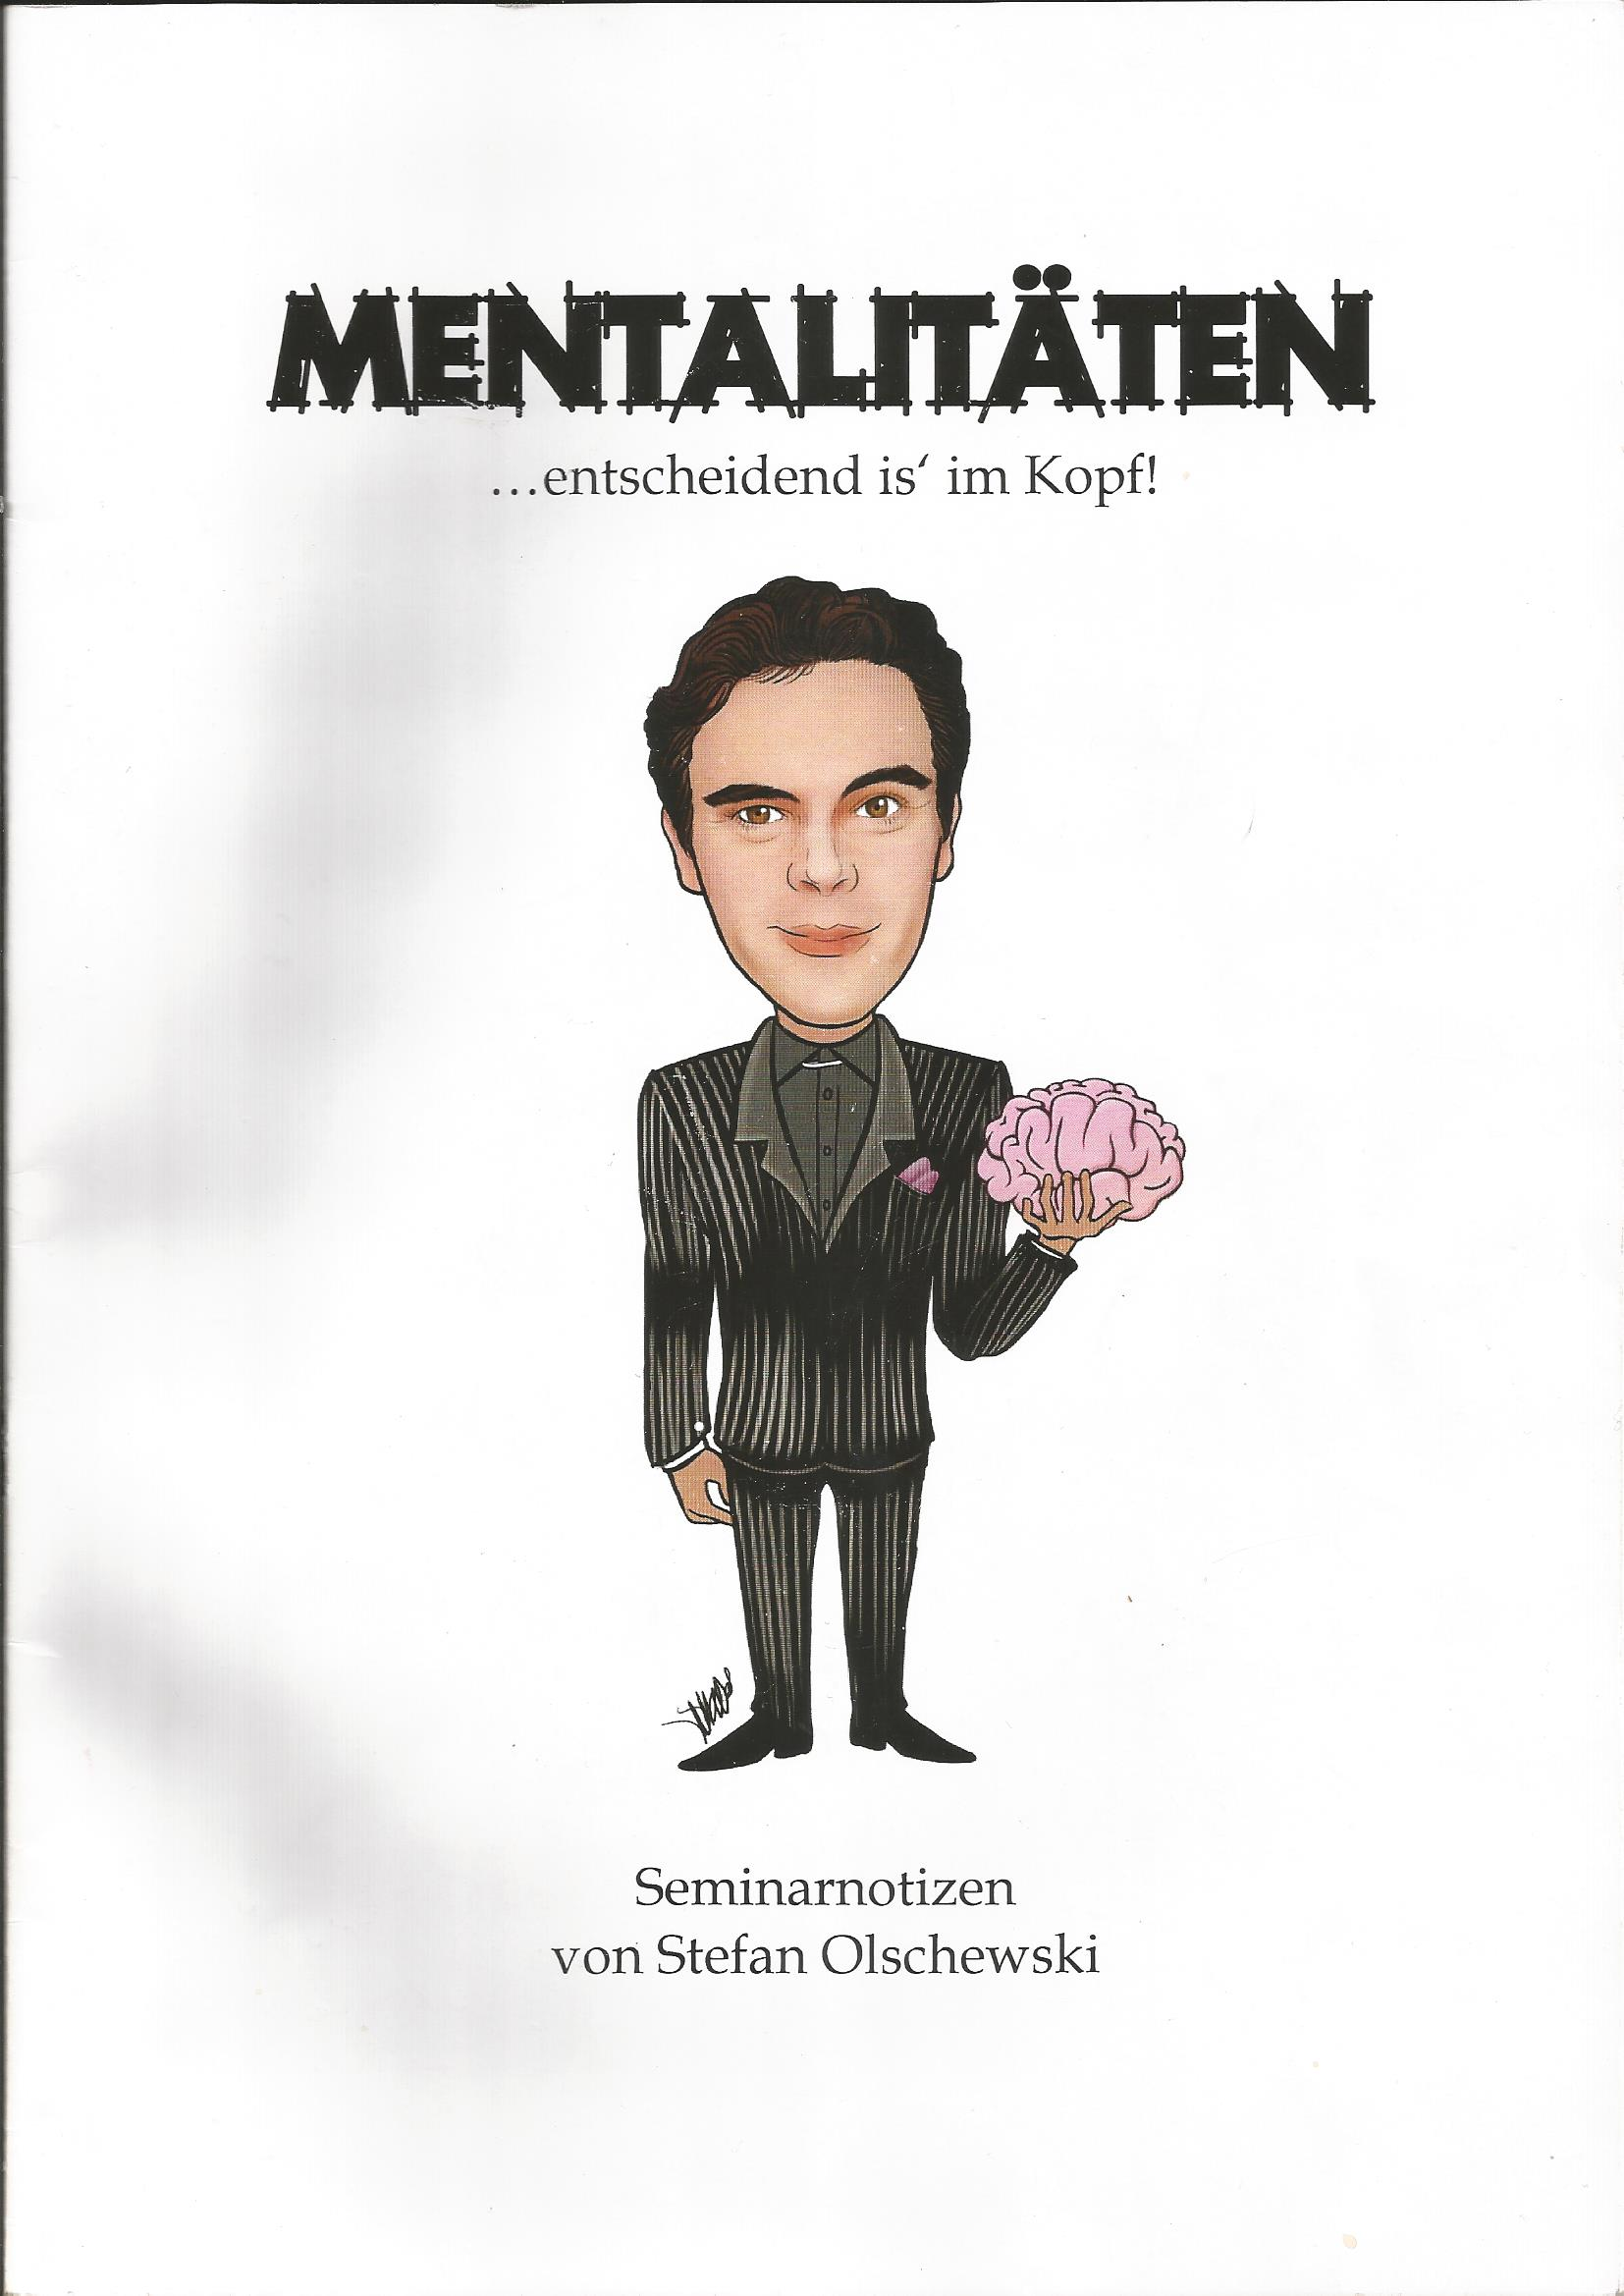 Stefan Olschewski - Mentalitaten Seminar 2013